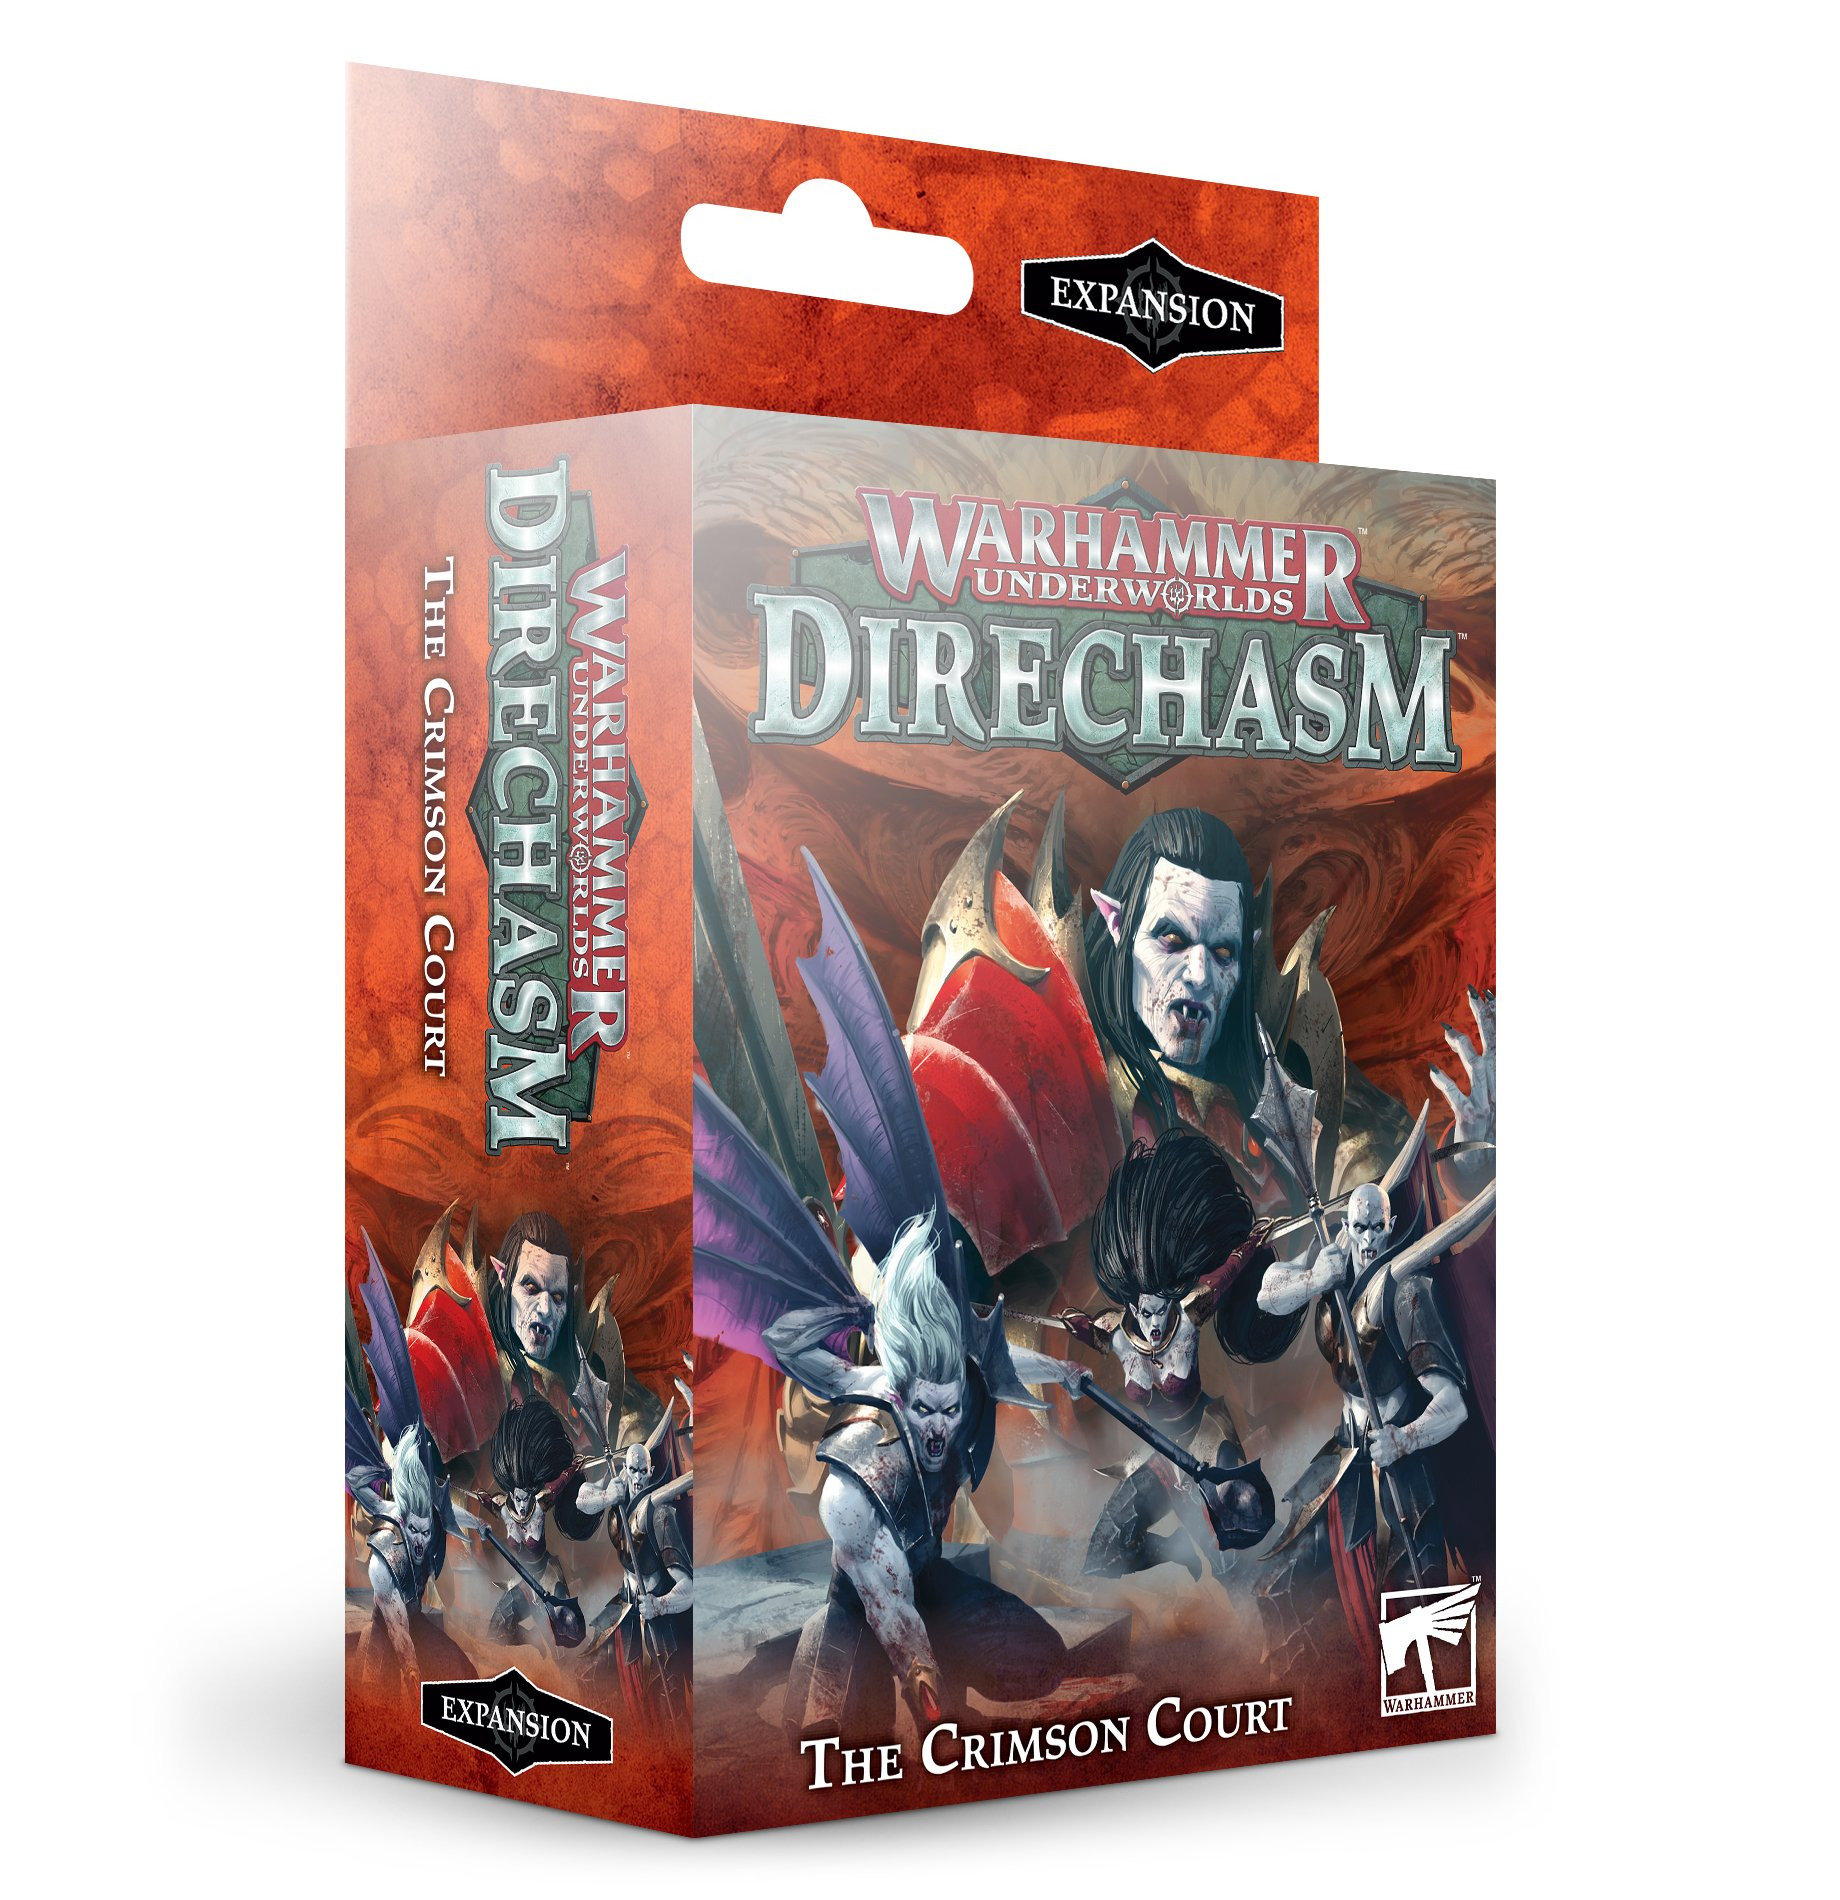 Desková hra Warhammer Underworlds: Direchasm - The Crimson Court (rozšíření)